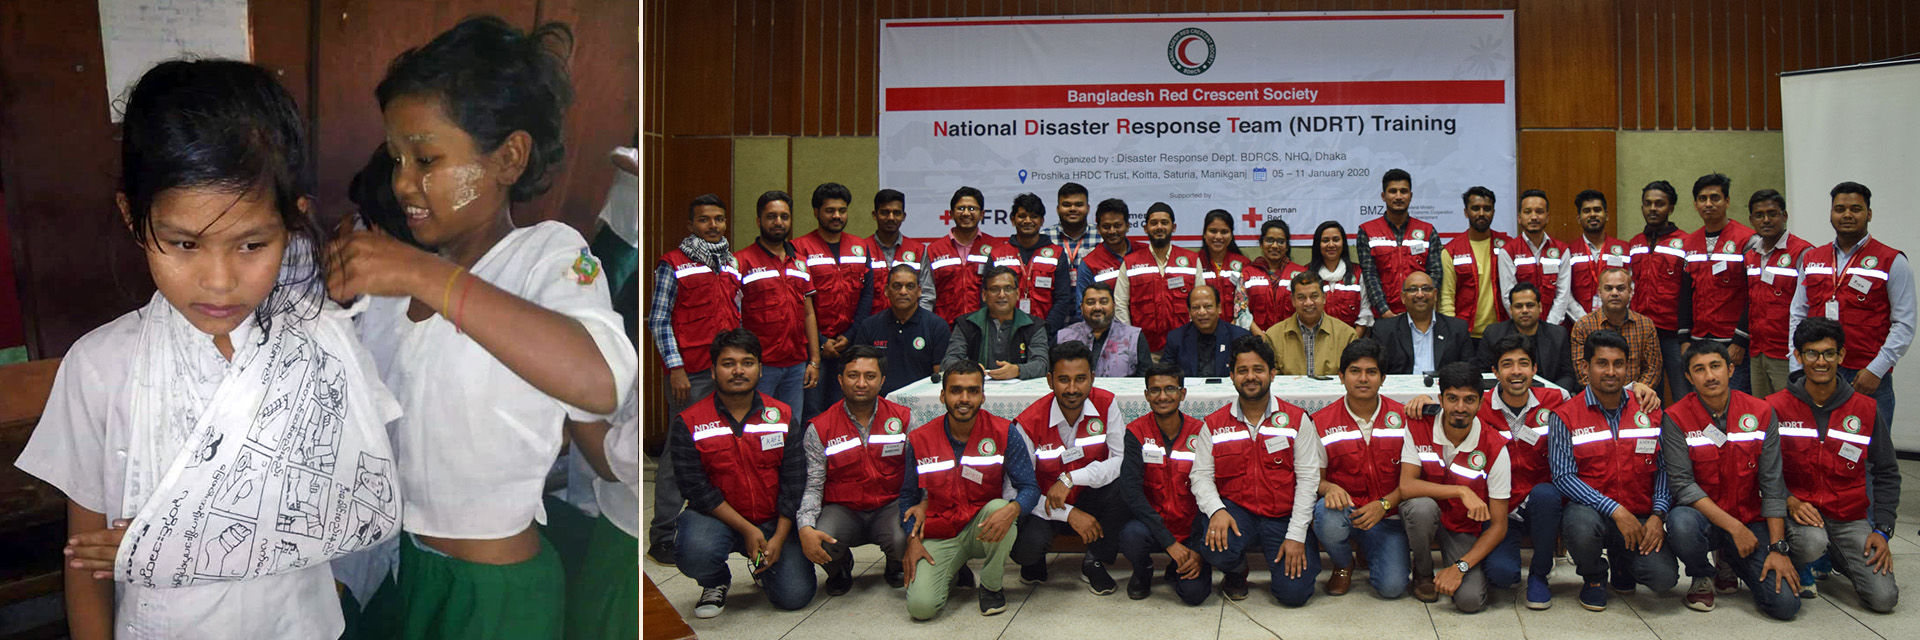 National Disaster Response Team zur Verringerung des Katastrophenrisikos in Asien 